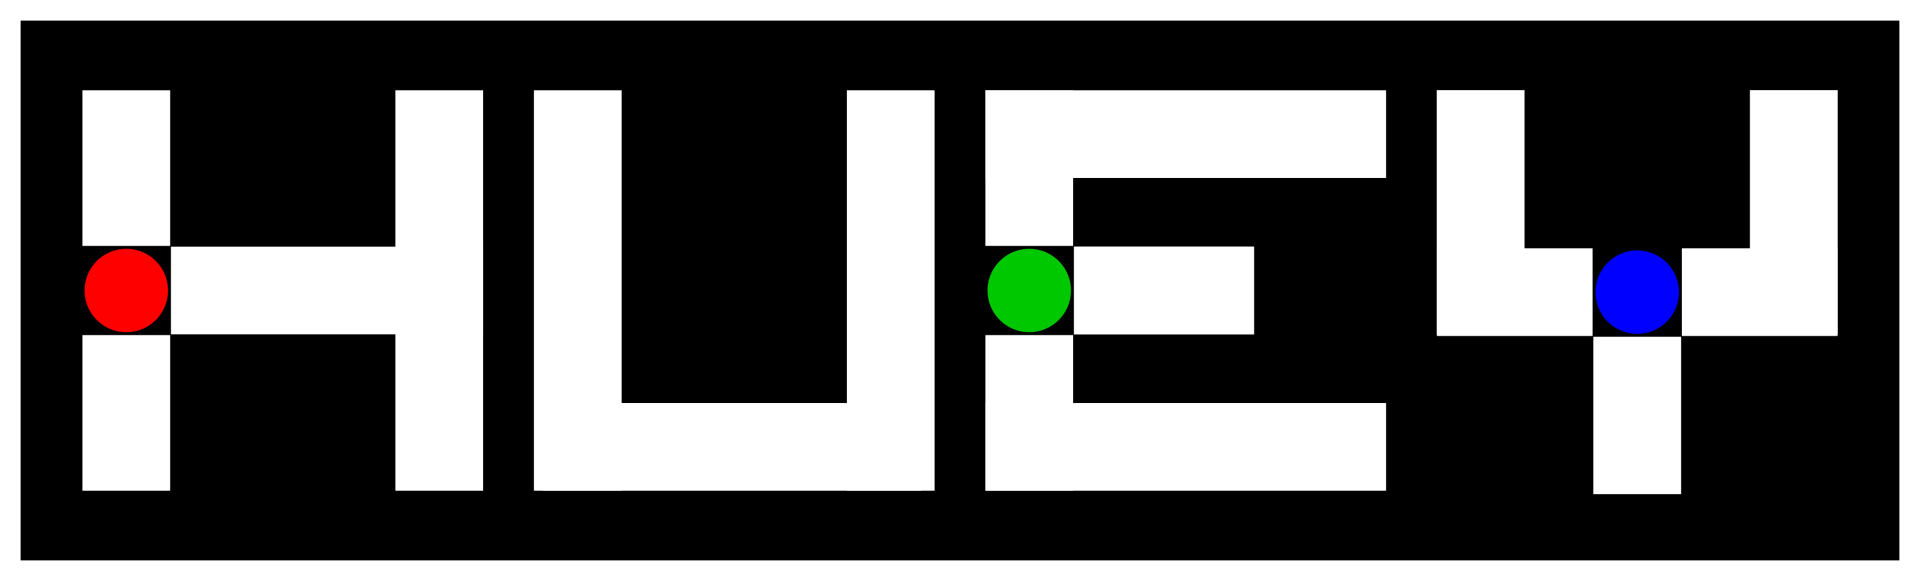 Huey Games logo